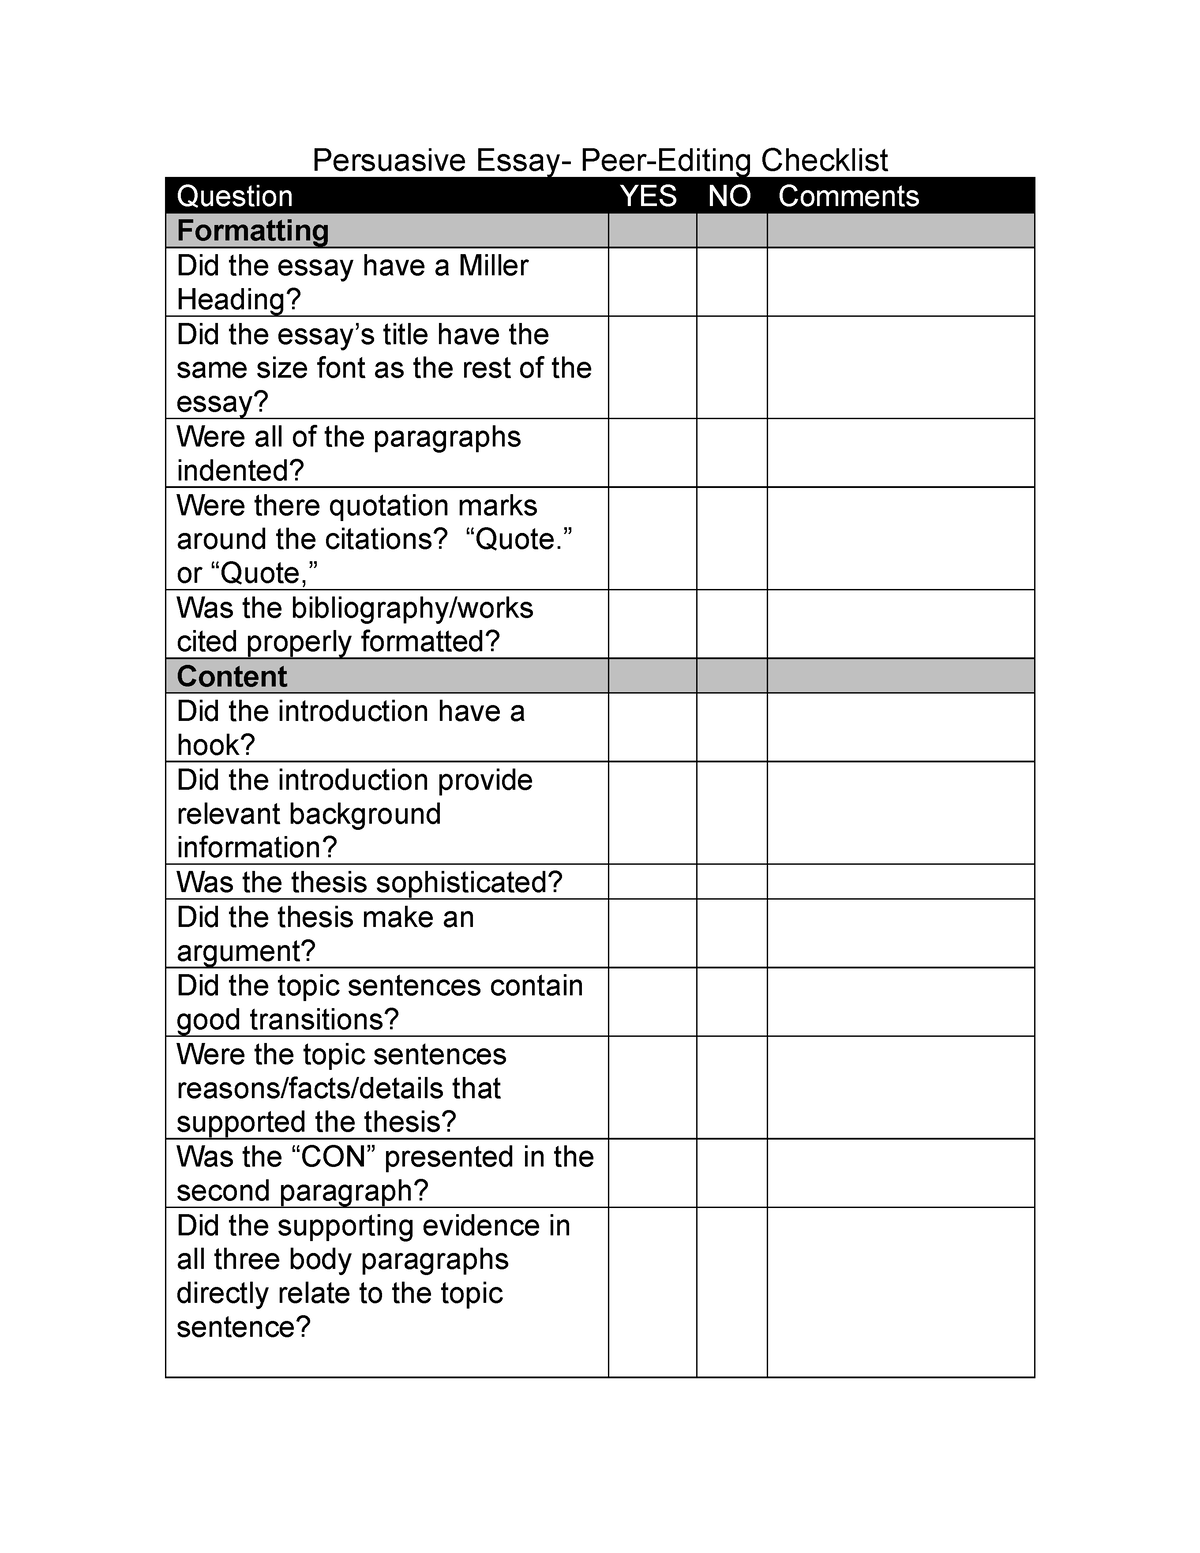 opinion essay editing checklist